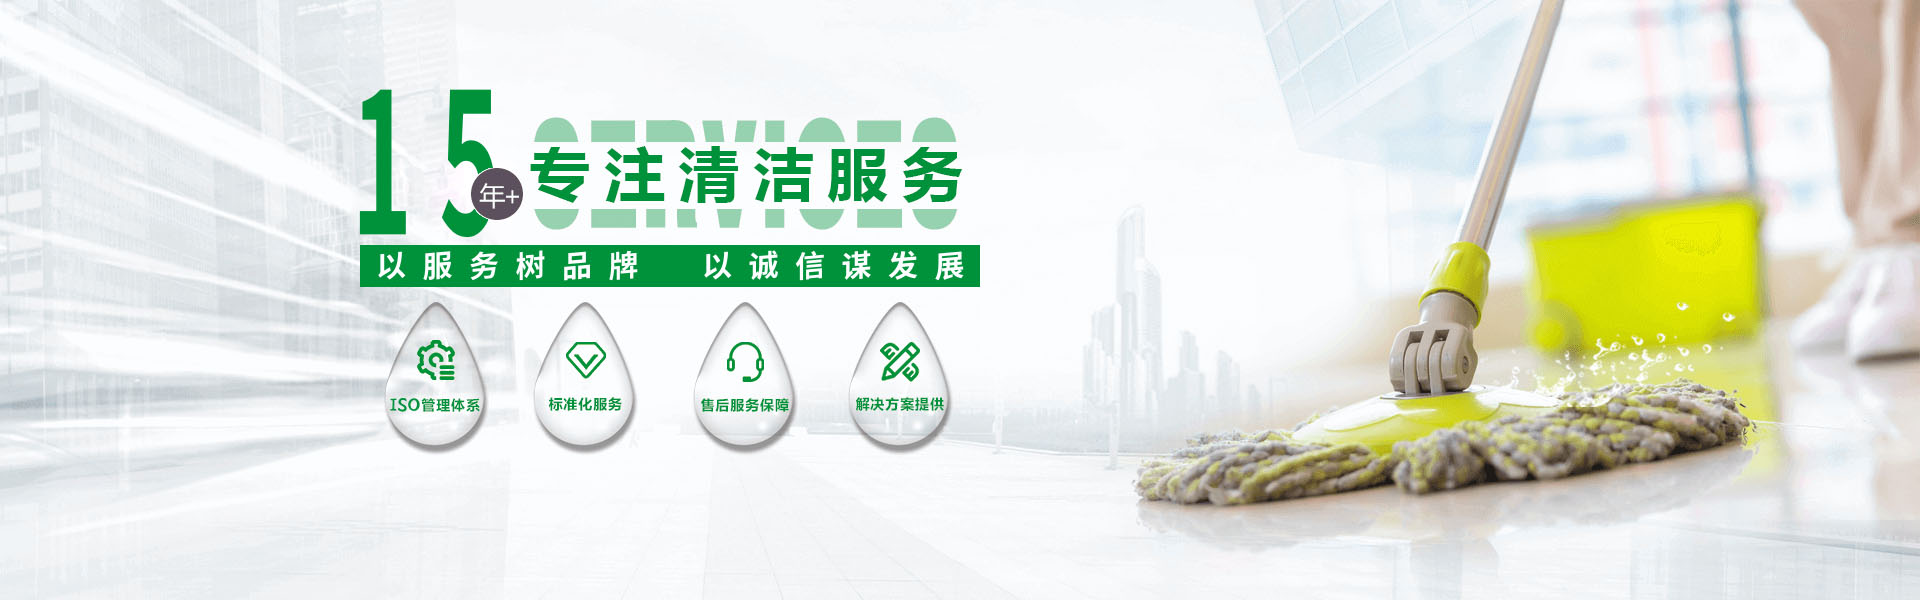 深圳绿冶清洁服务有限公司